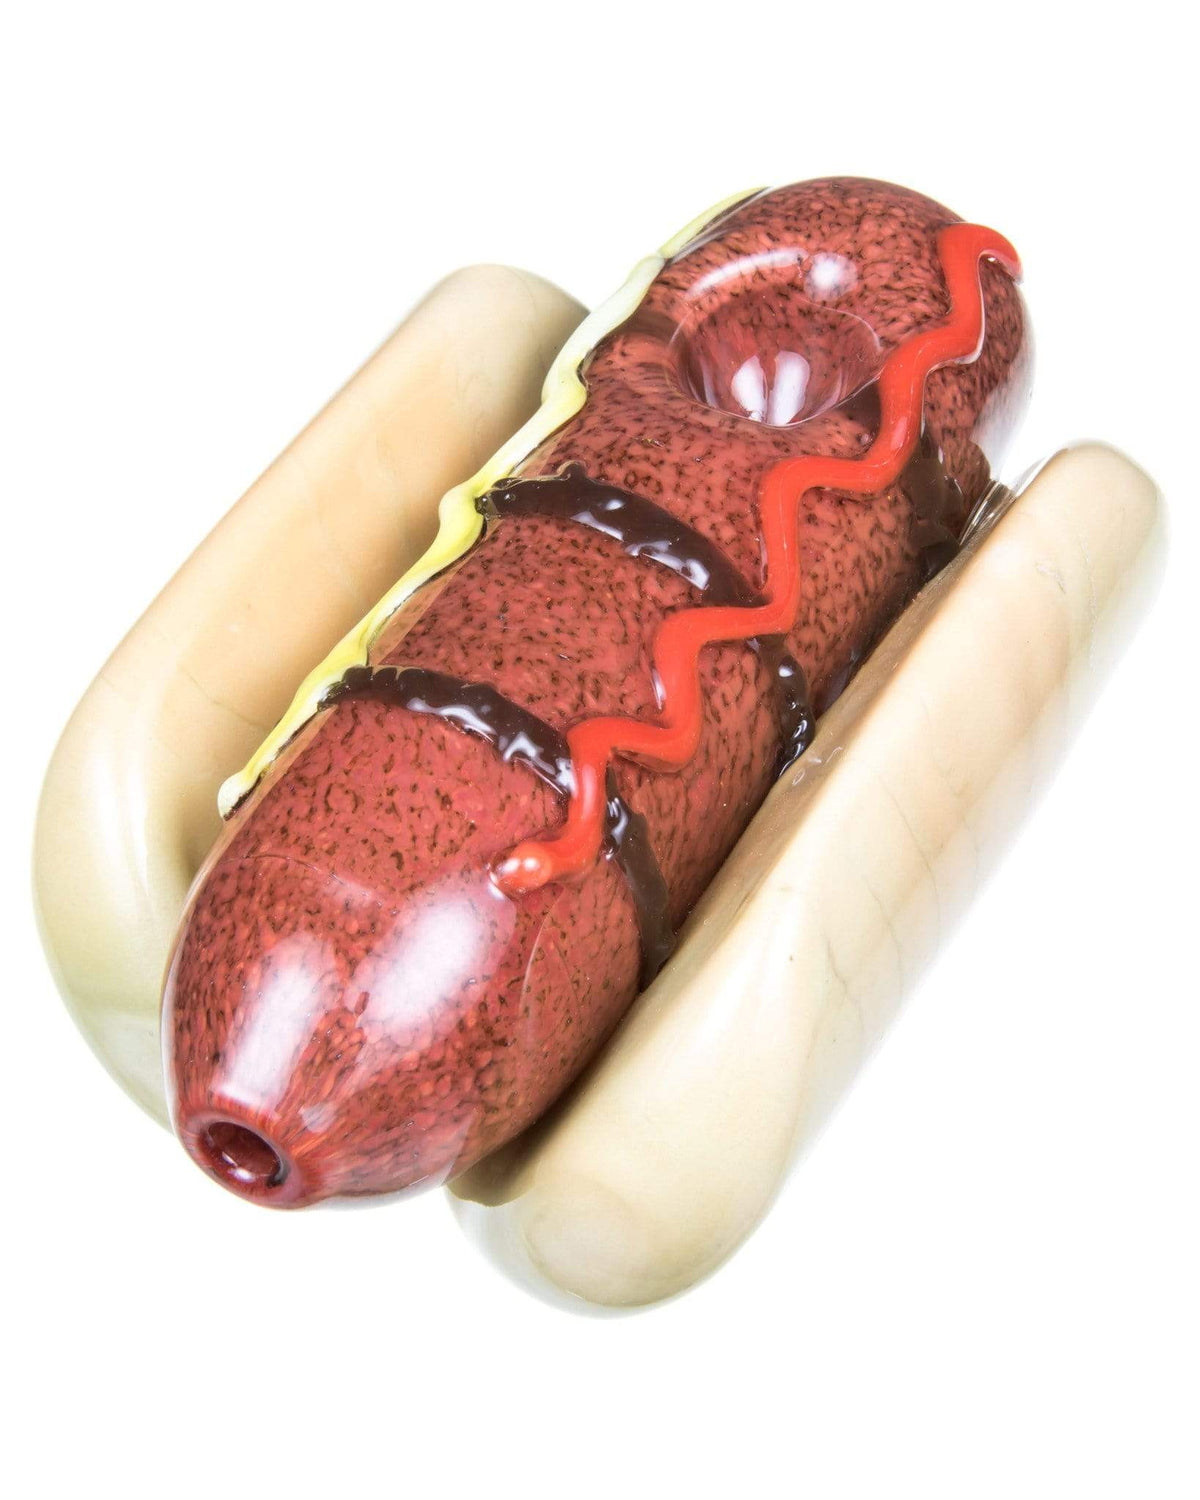 hot dog steamroller